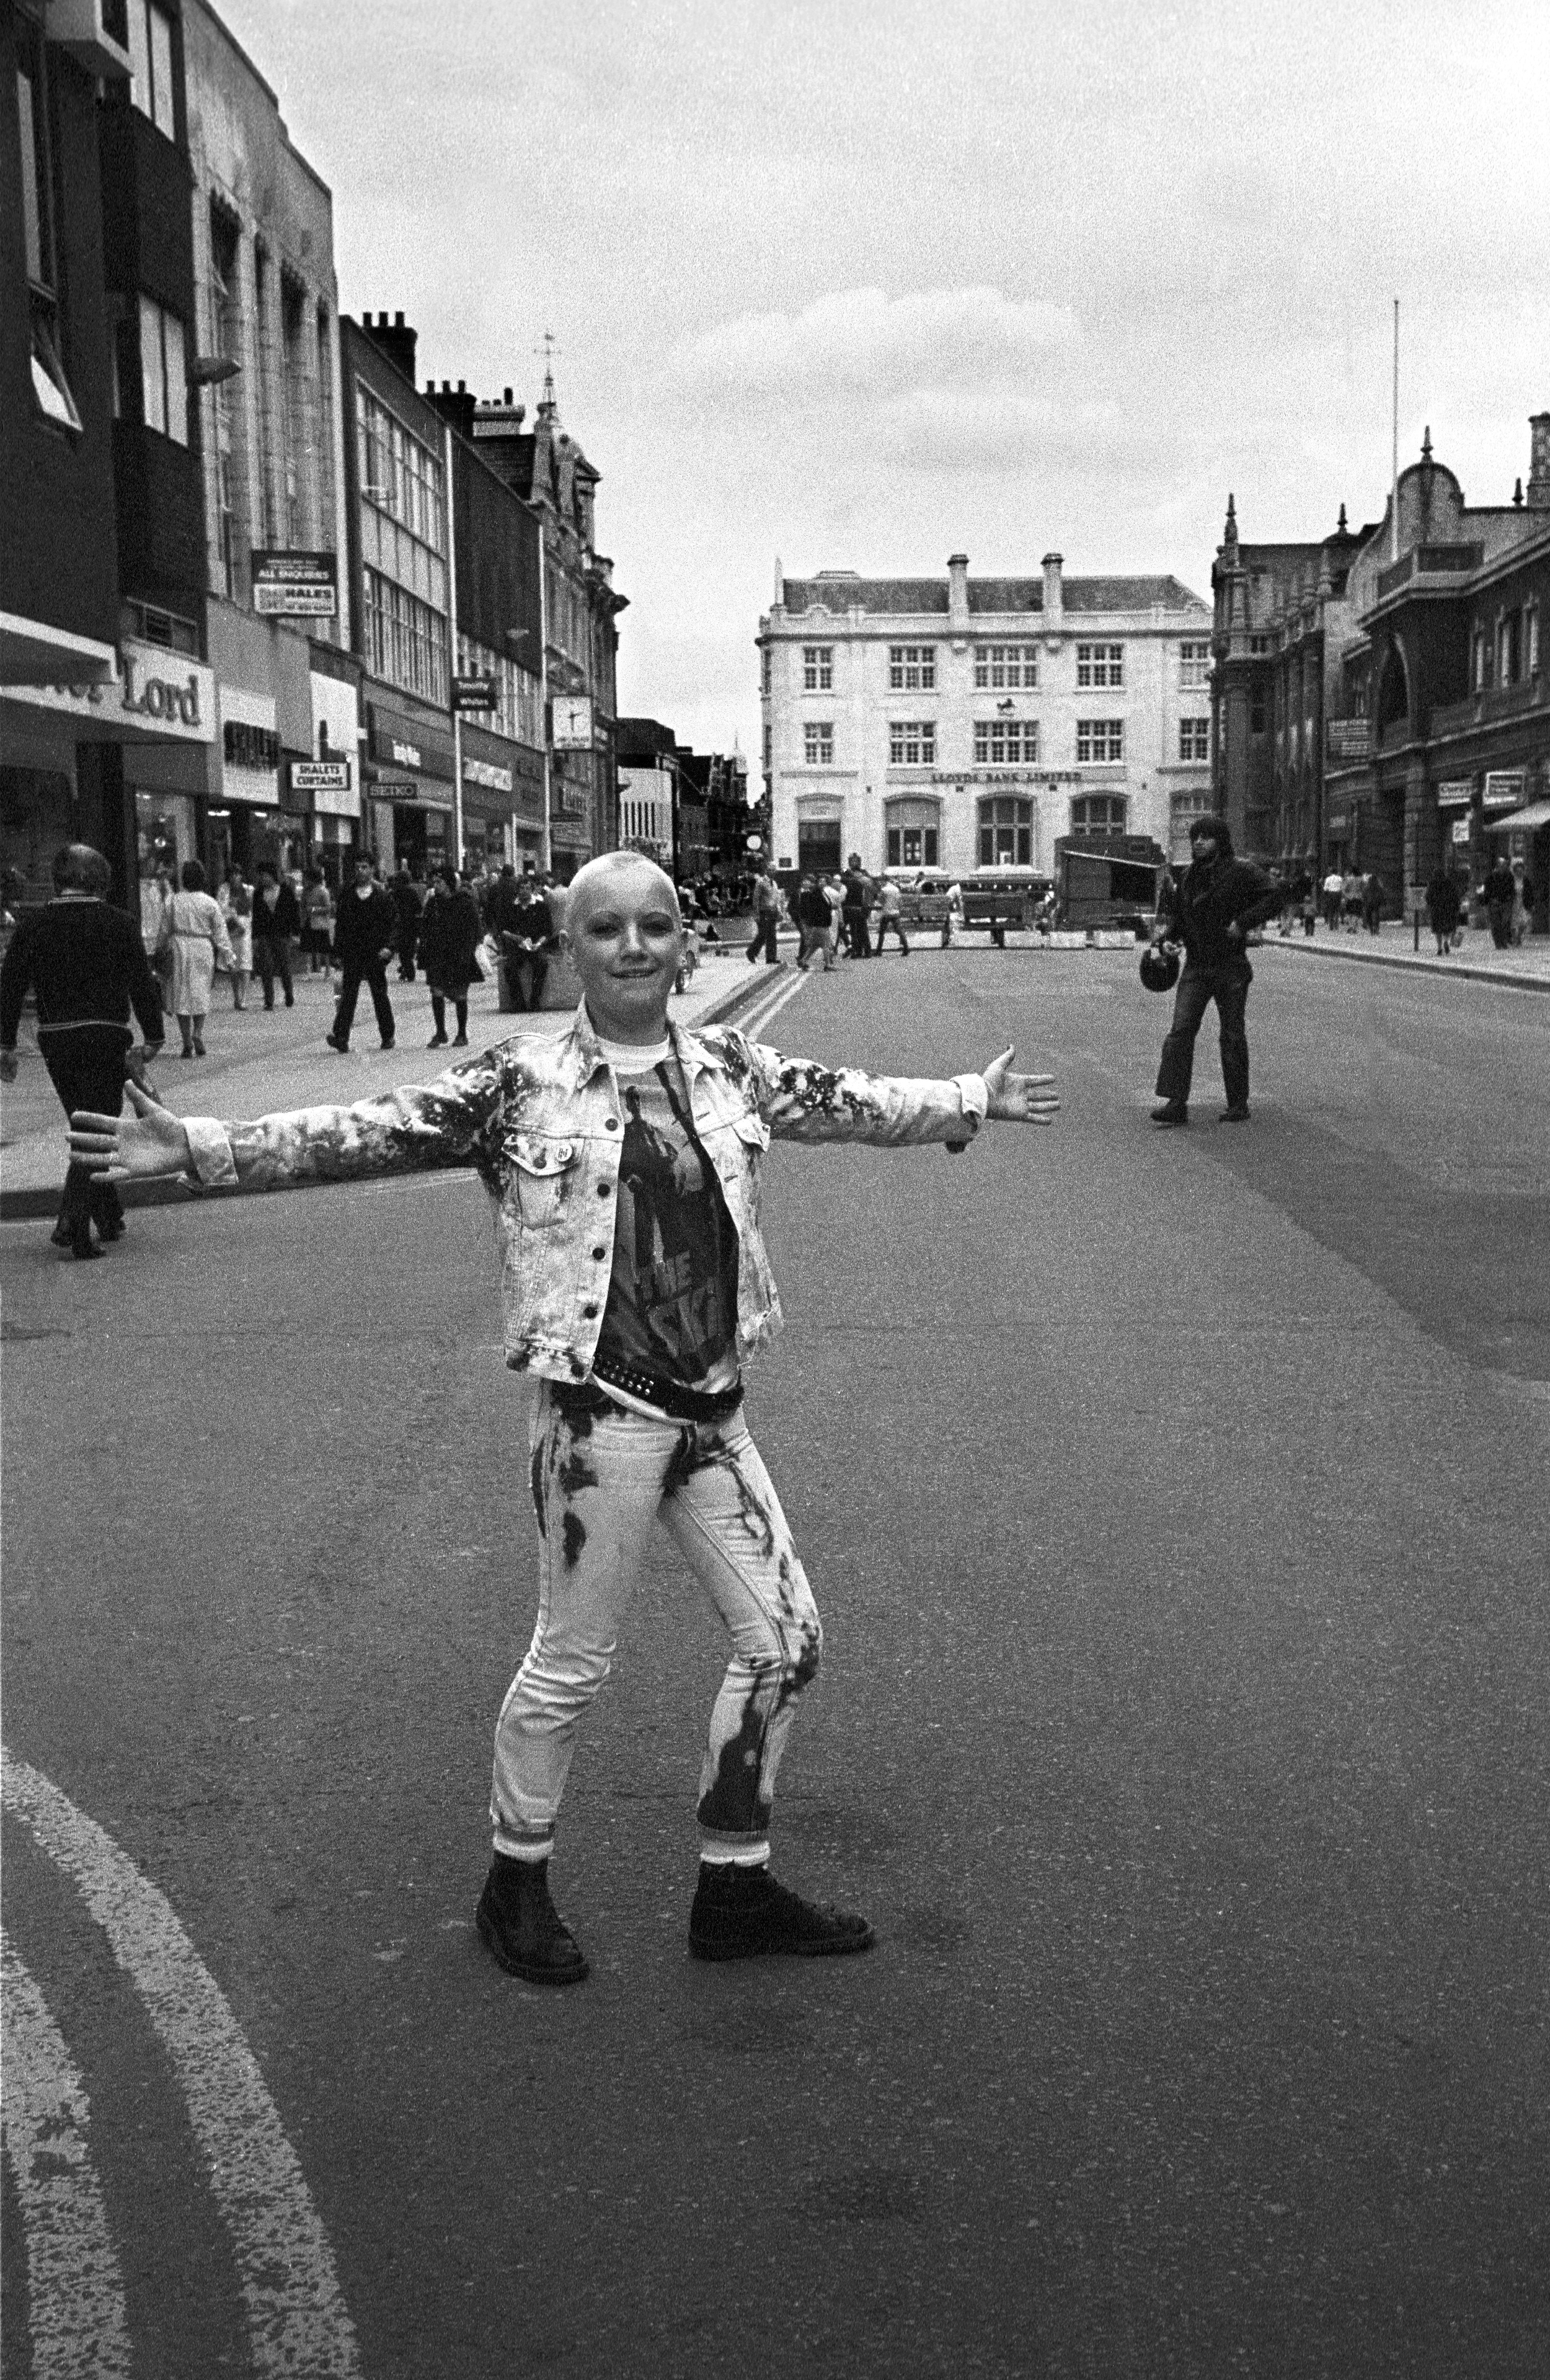 reunions chris porsz street photography peterborough 1970s